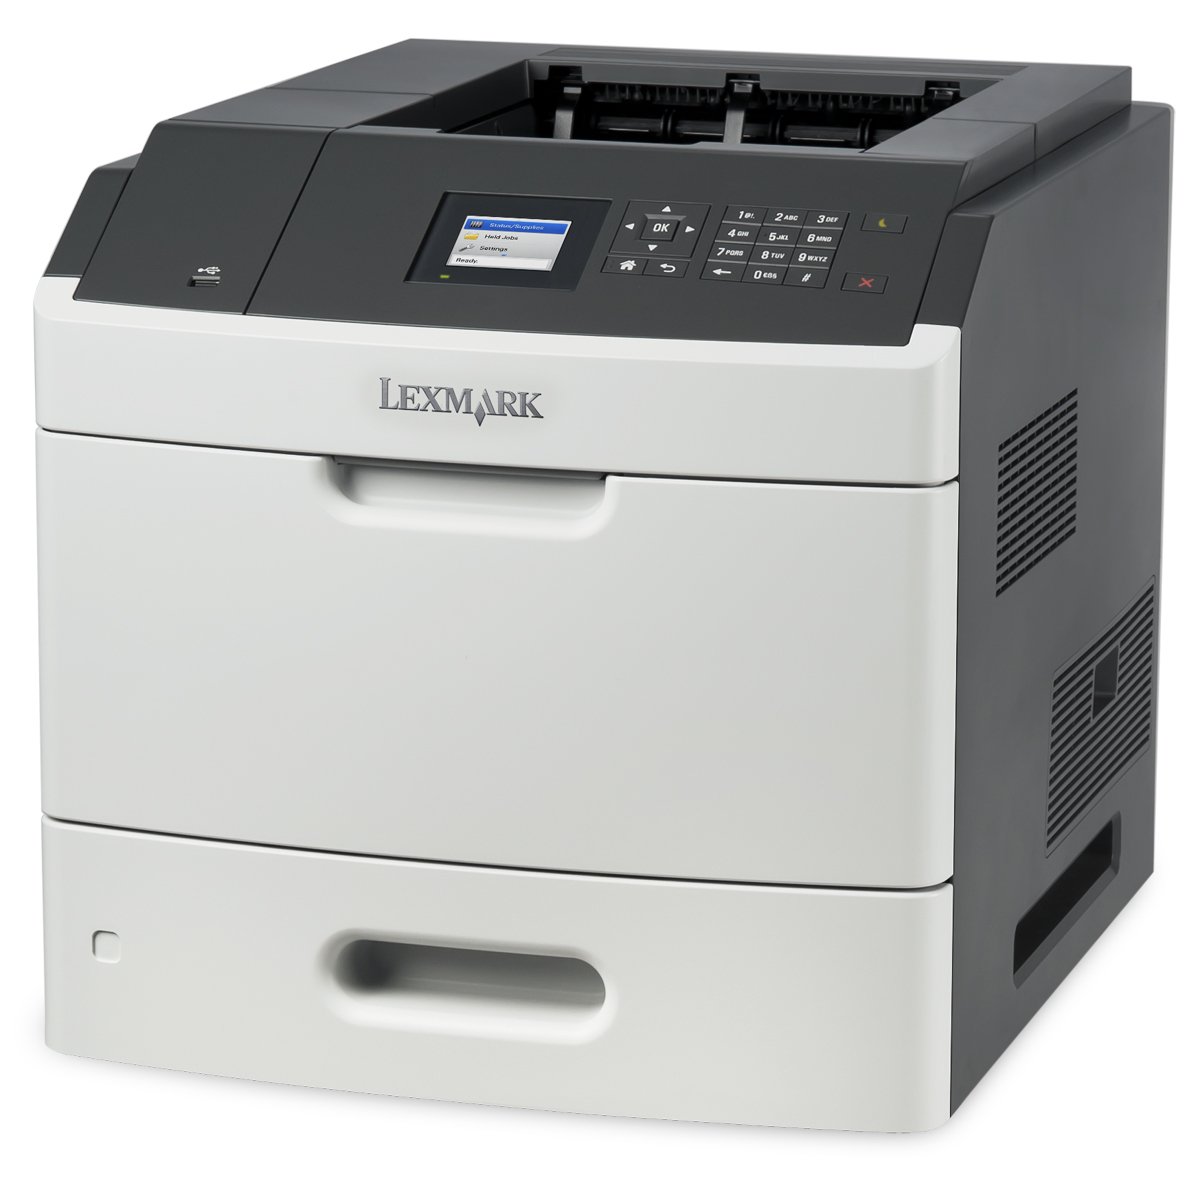 Lexmark MS810n单色激光打印机，网络就绪和专业功能...